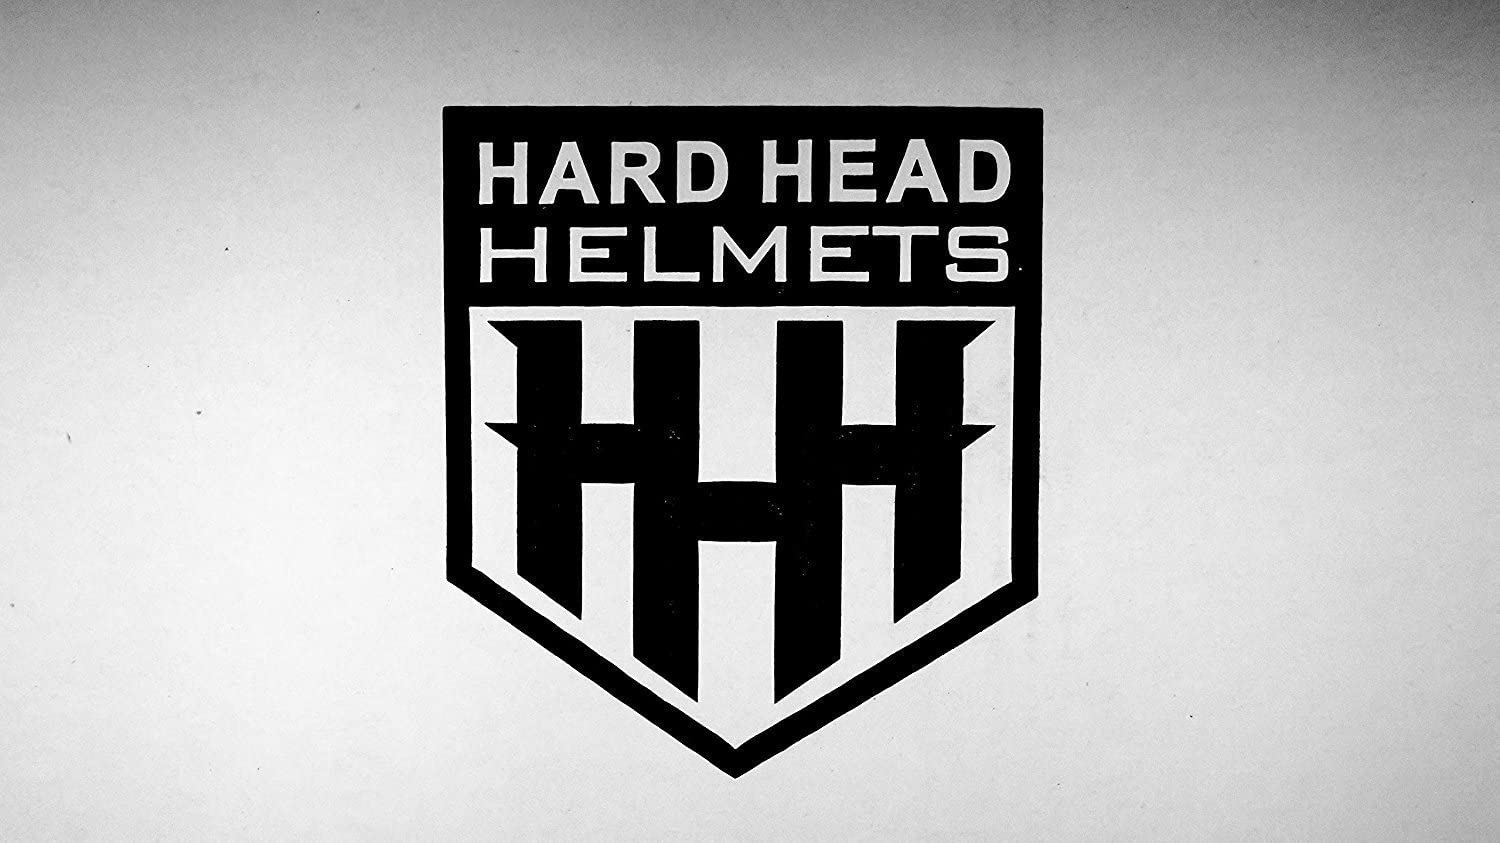 HHH DOT Youth & Kids Helmet for Dirtbike ATV Motocross MX Offroad Motorcyle Street bike Snowmobile Helmet with VISOR-Pink-Stripe-USA